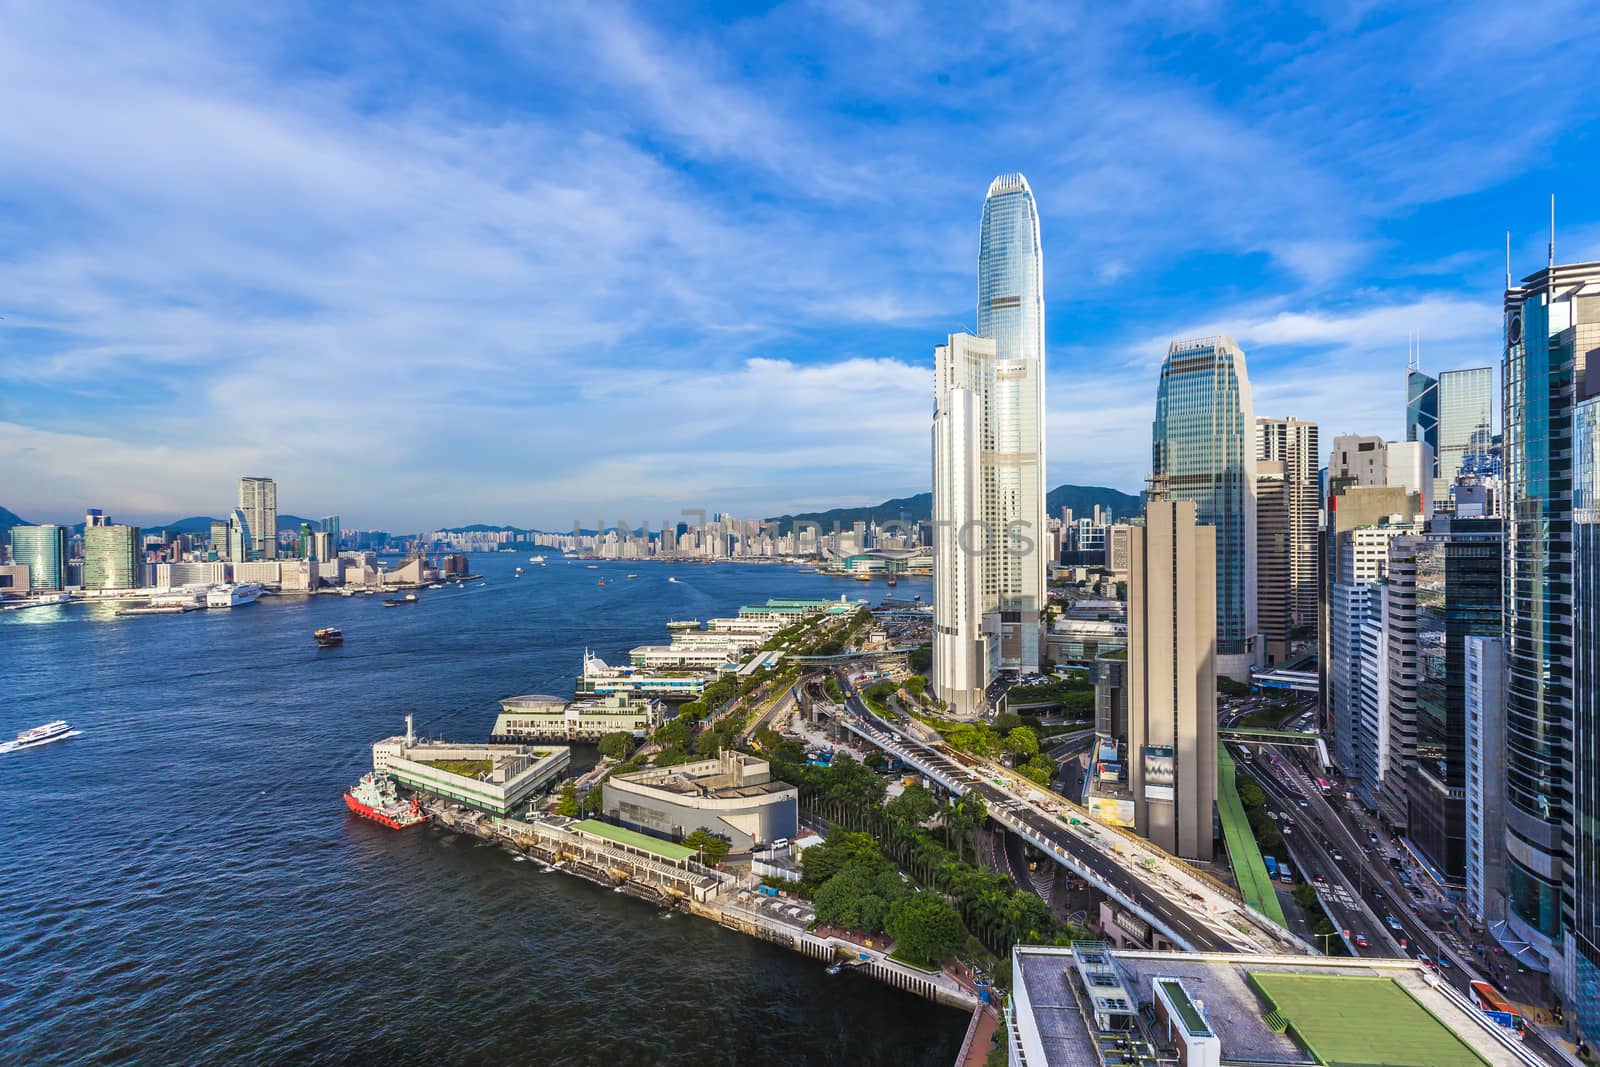 Hong Kong modern city by kawing921